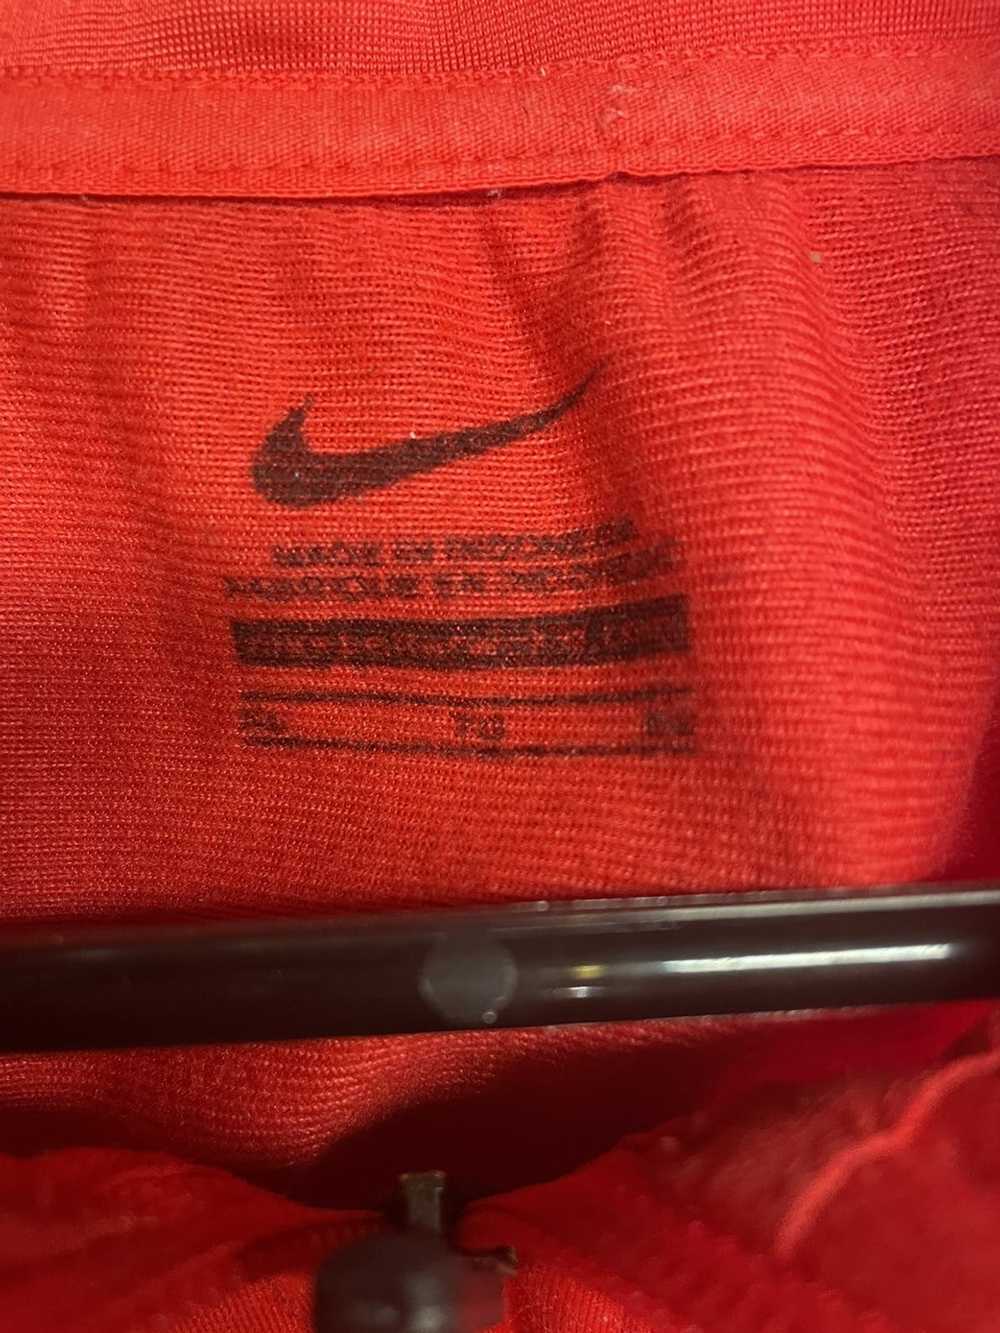 Nike Nike zip up track jacket - image 2